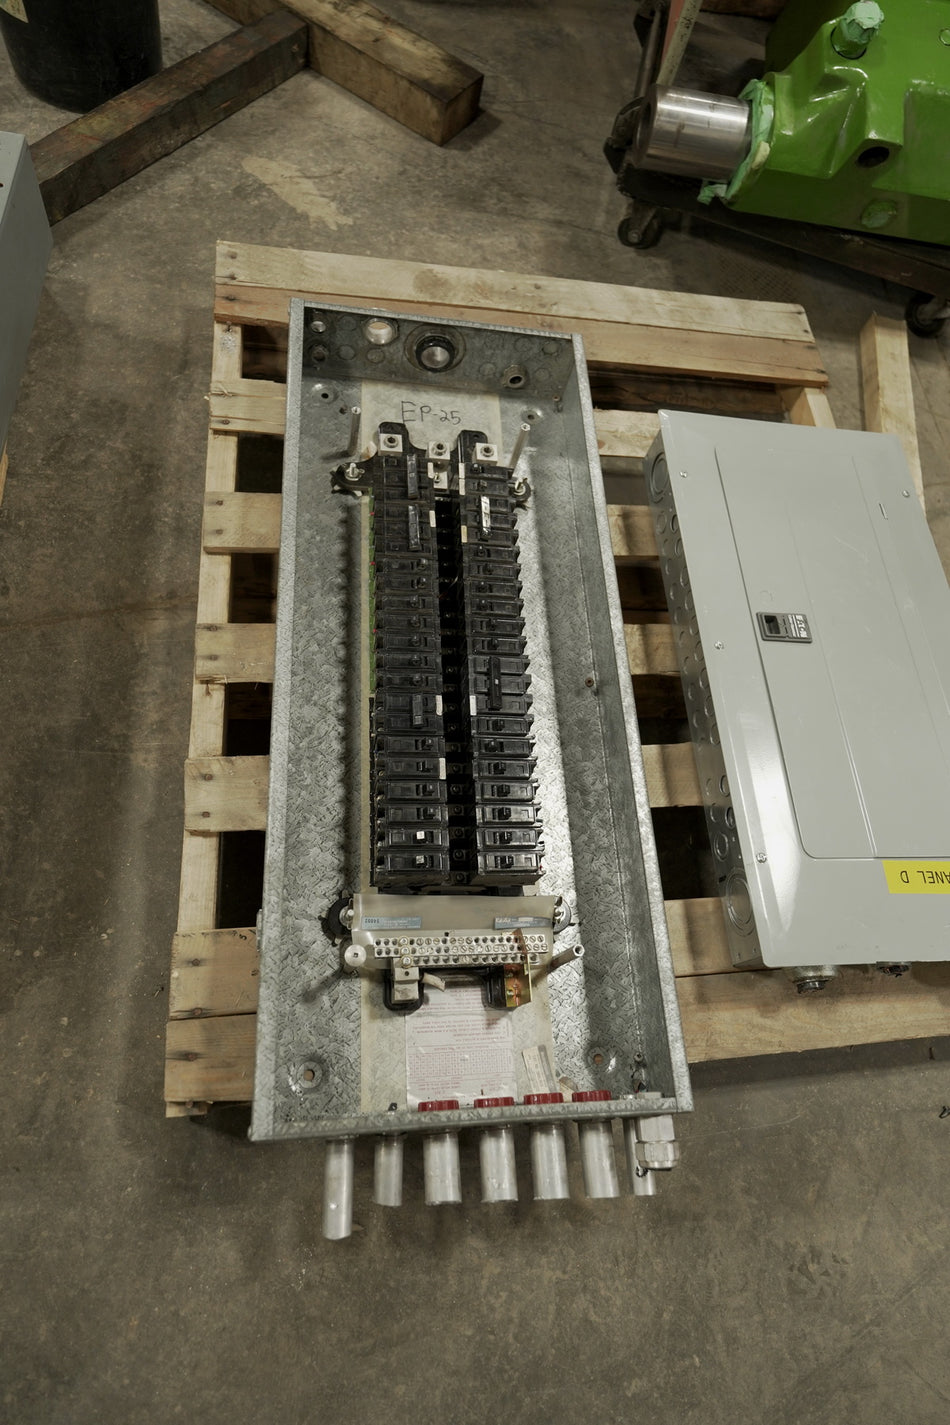 125A (208V/120V) Electrical Panel